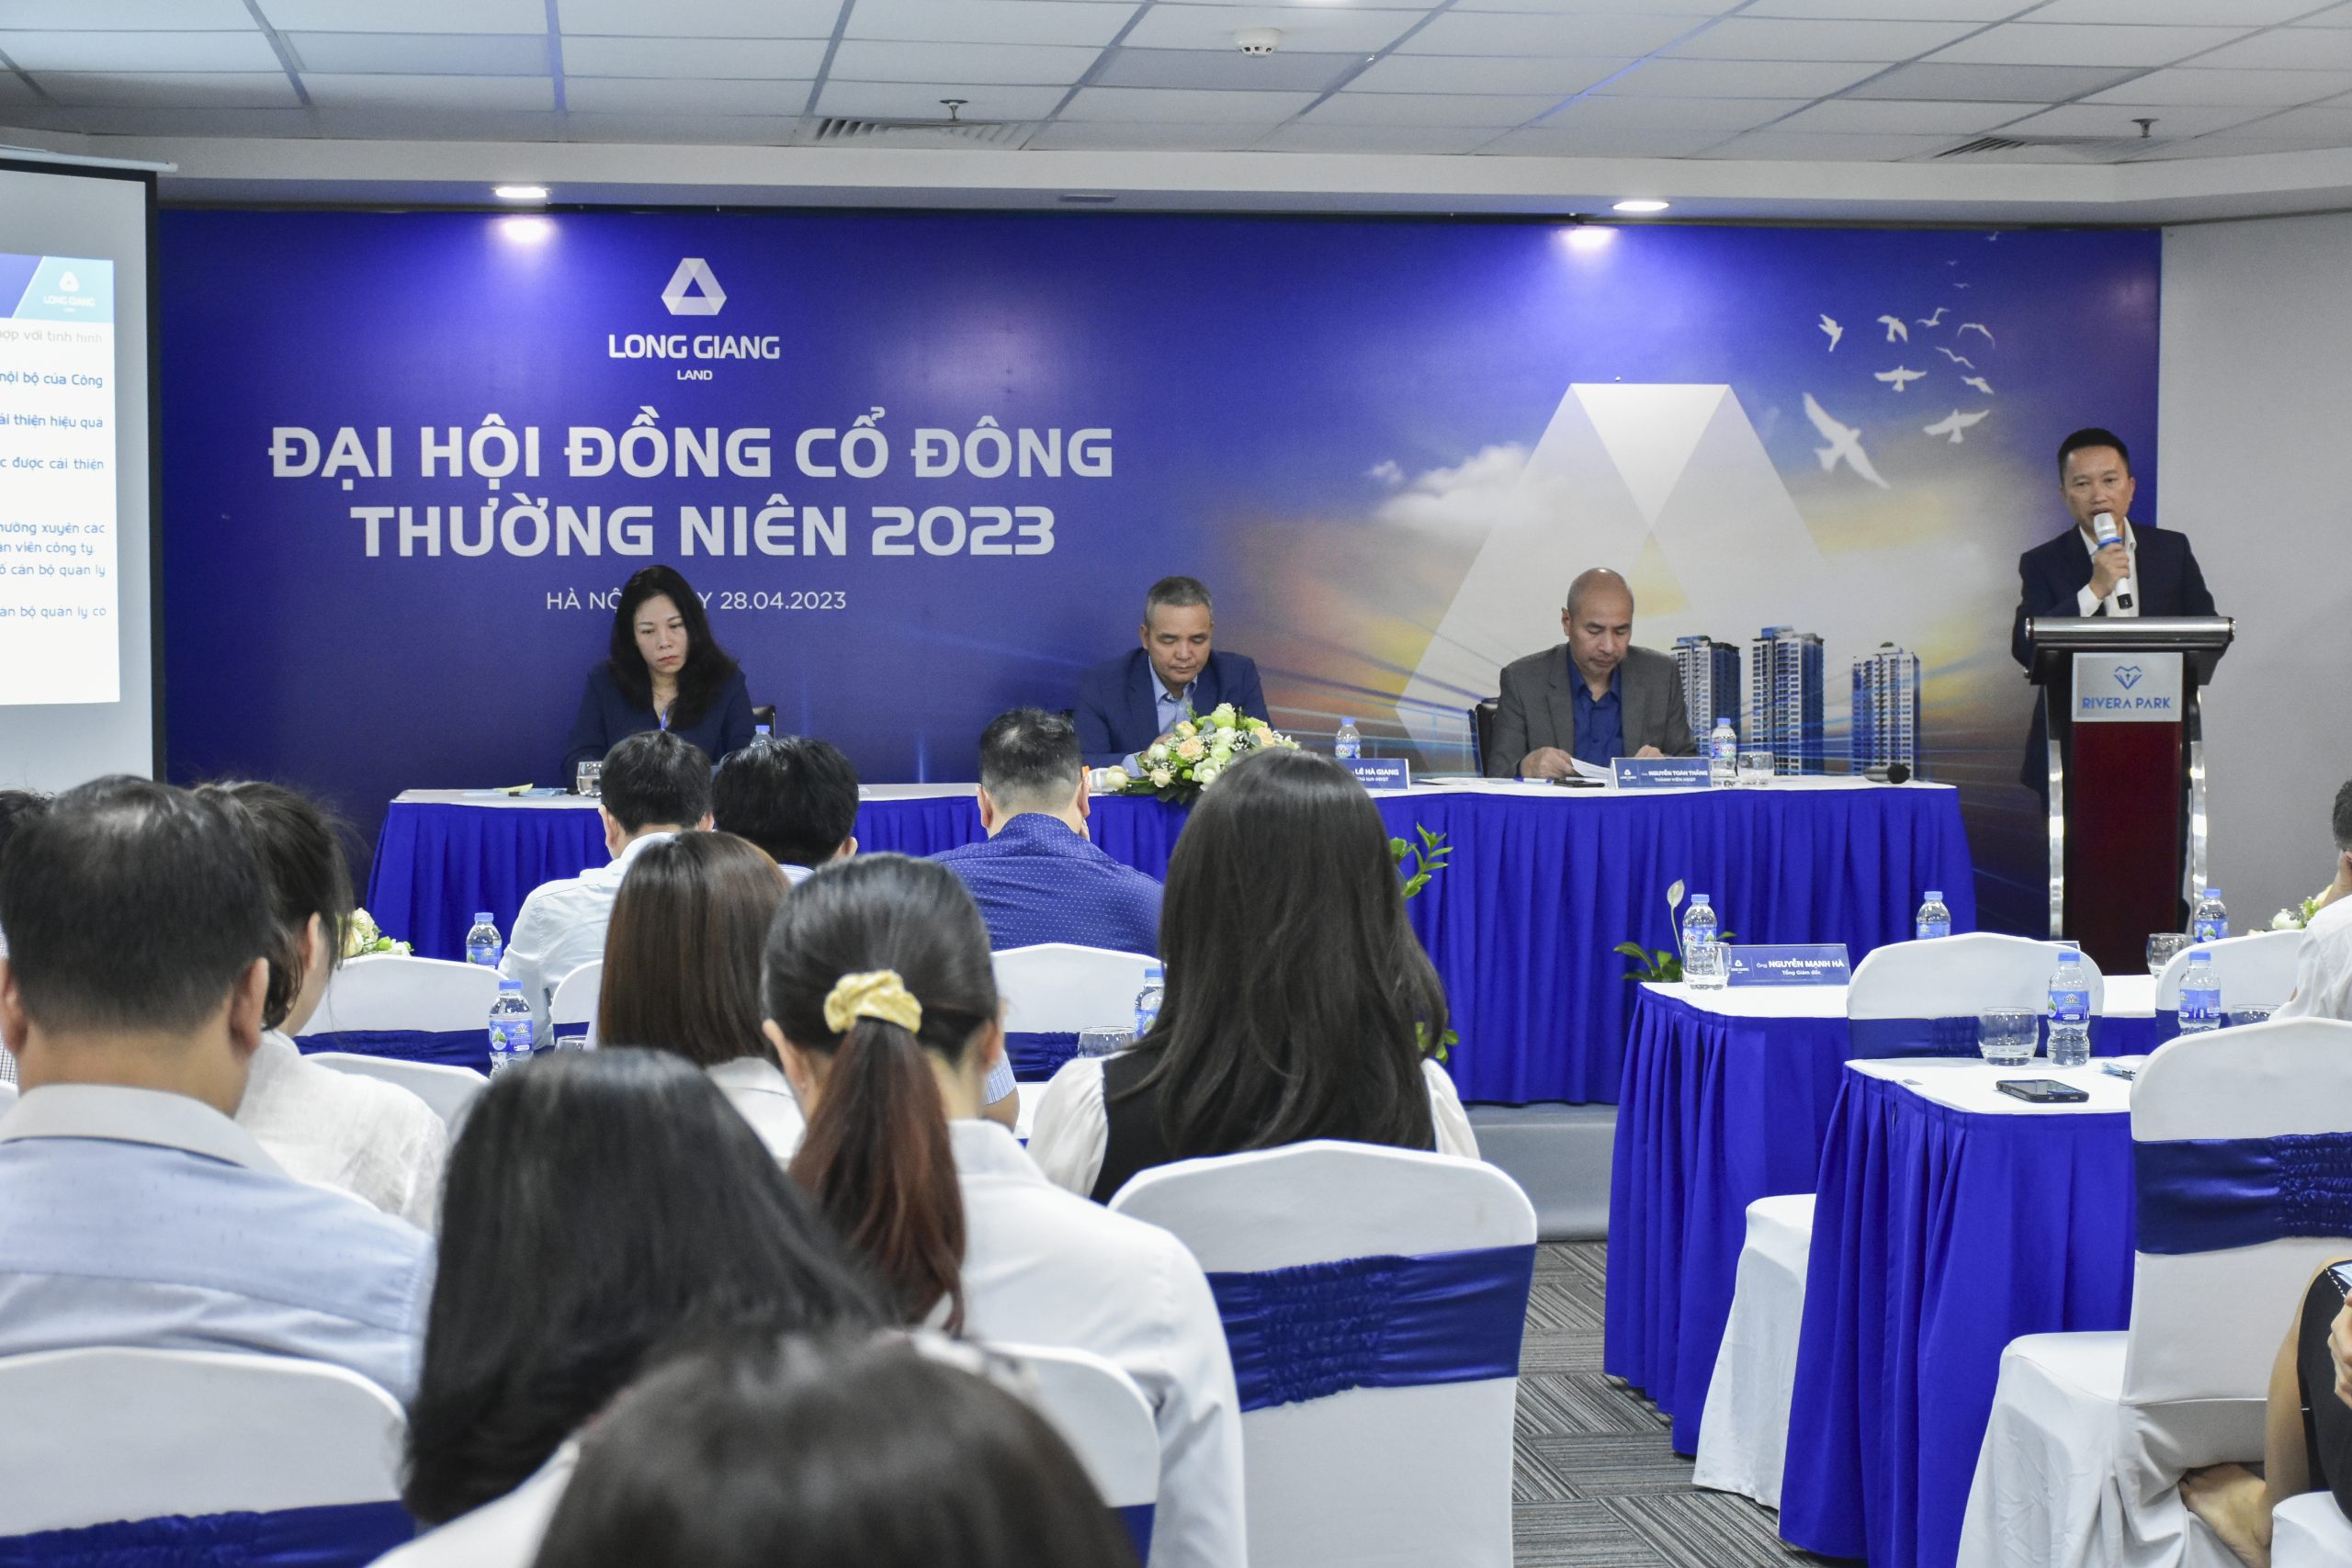 Long Giang Land tổ chức thành công Đại Hội đồng Cổ đông thường niên năm 2023